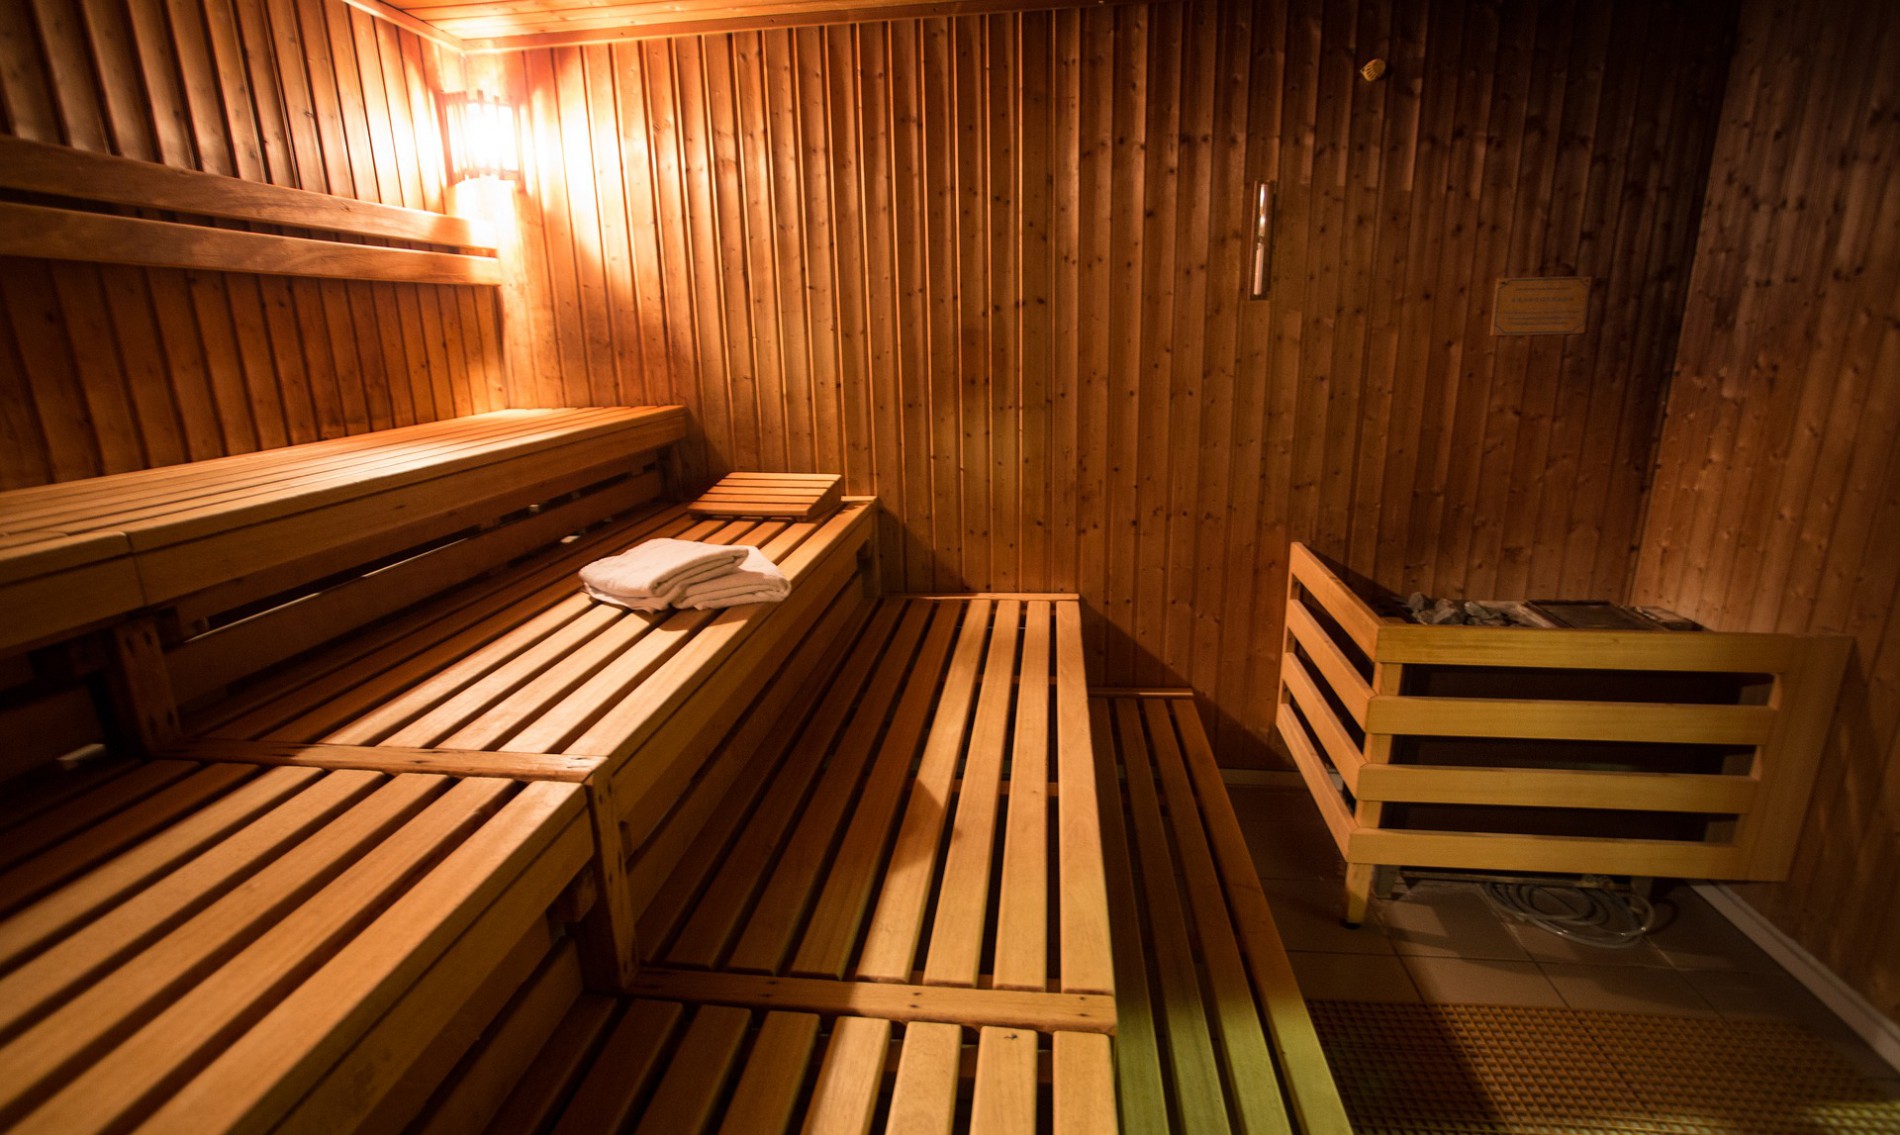 Waar moet ik mij aanhouden in de sauna